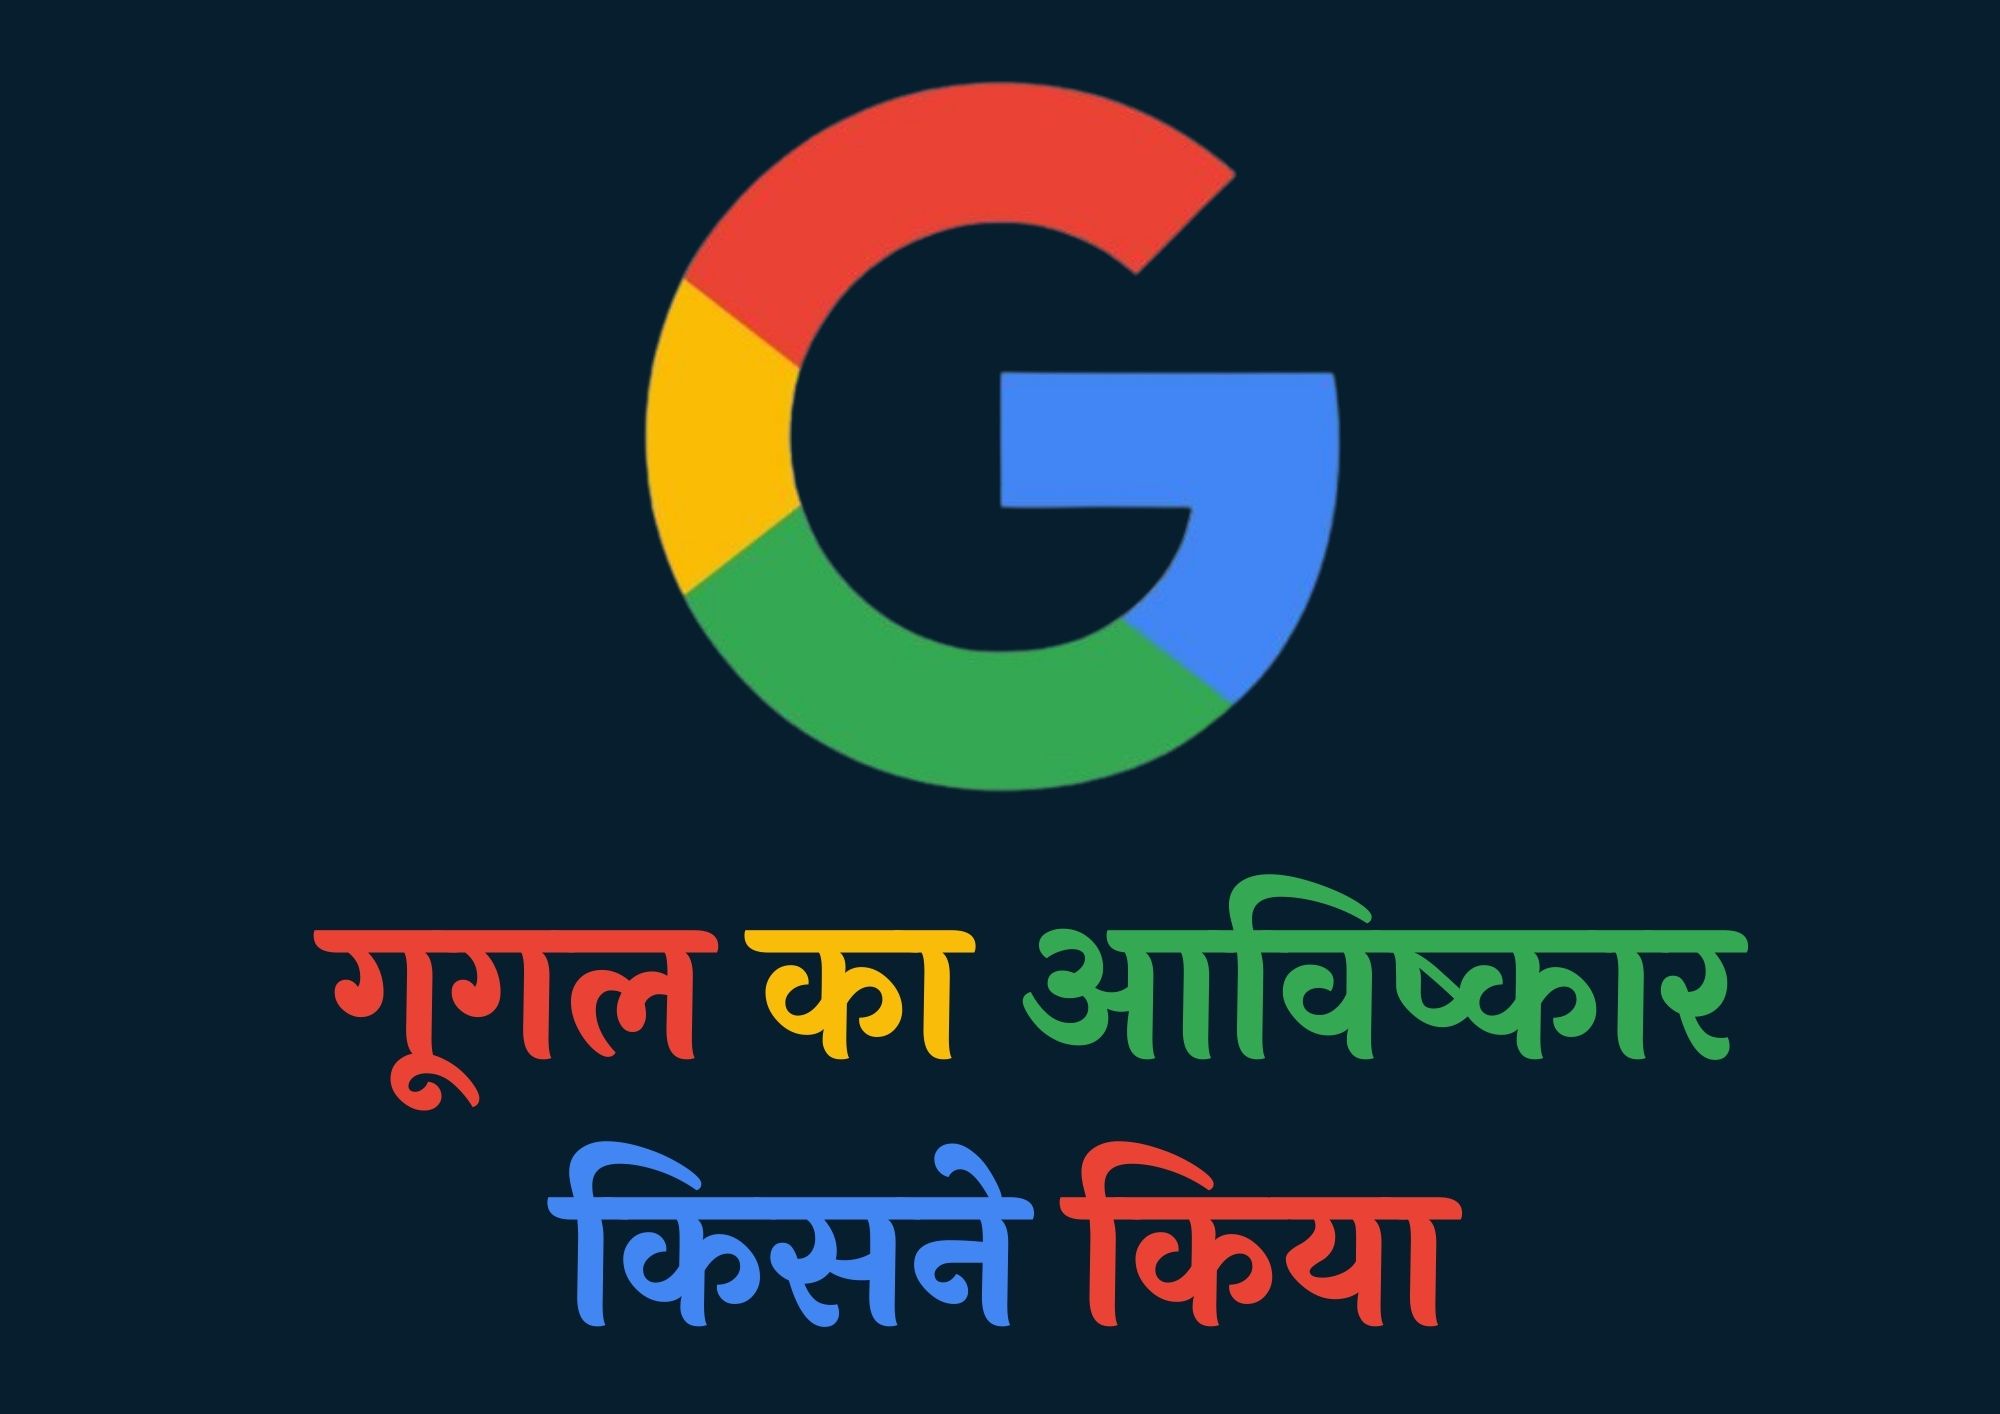 गूगल का आविष्कार किसने किया था | Google Ka Avishkar Kisne Kiya Tha